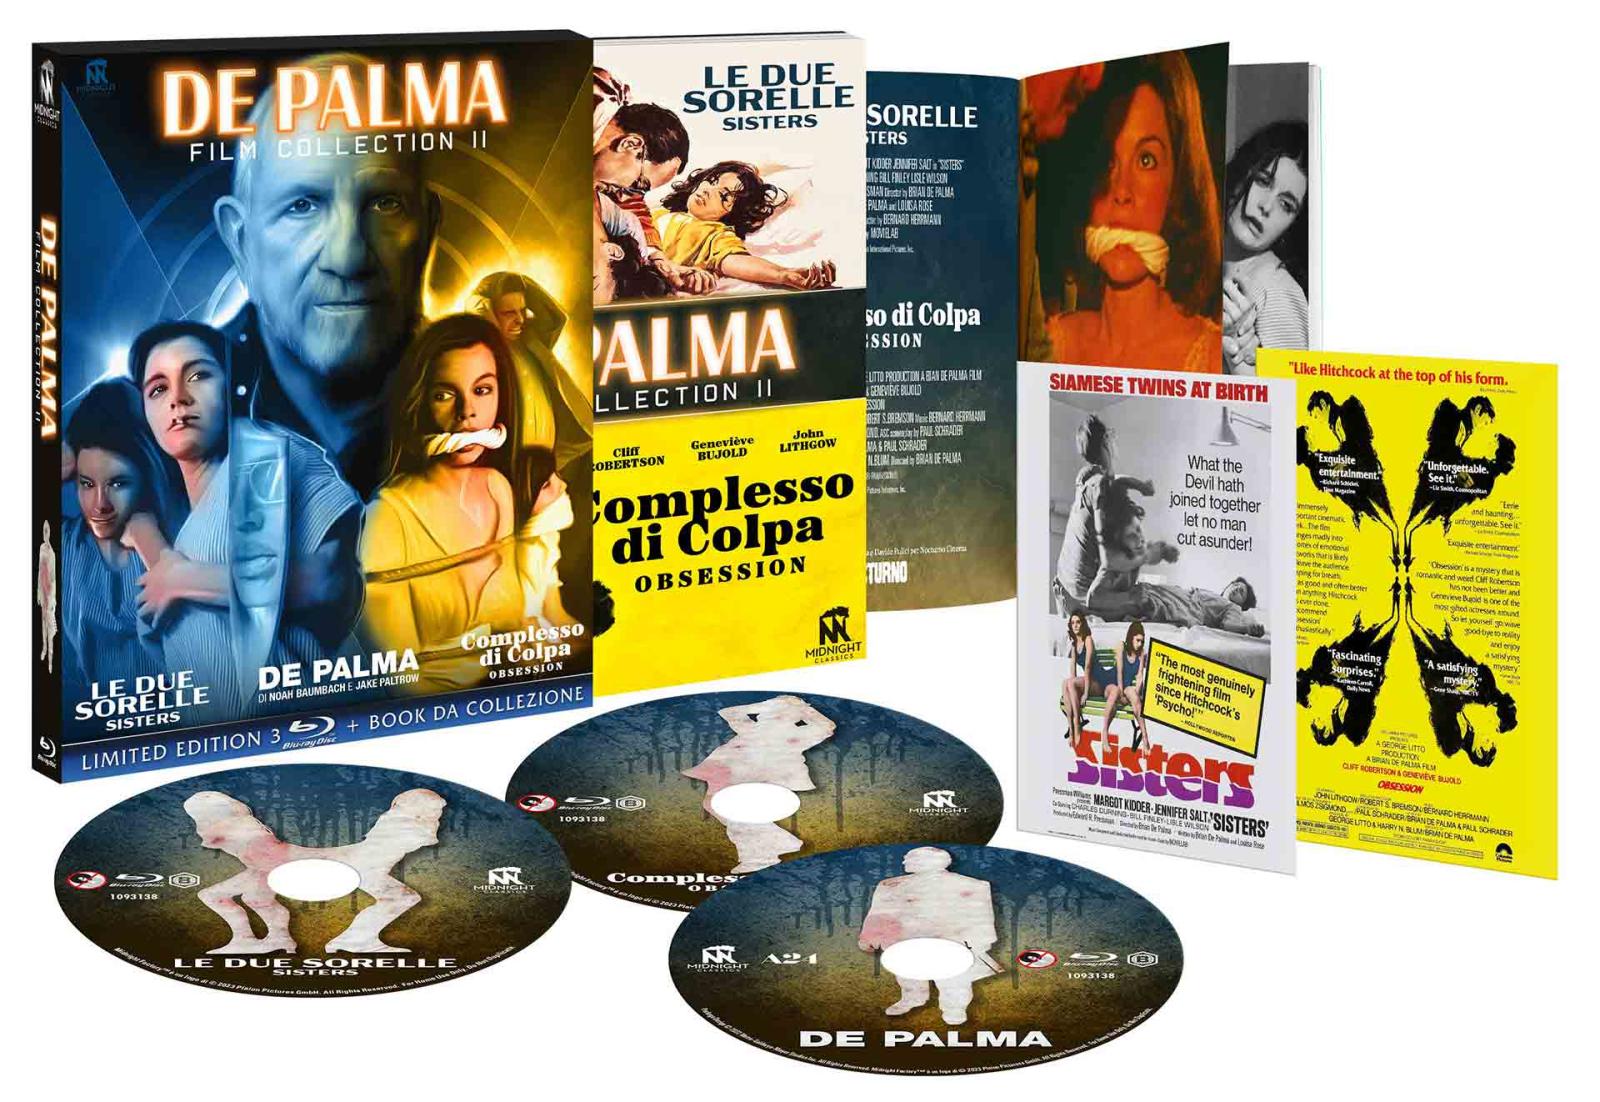 De Palma Film Collection 2 - Limited Edition 3 Blu-ray + Book da Collezione (Blu-ray) Image 6